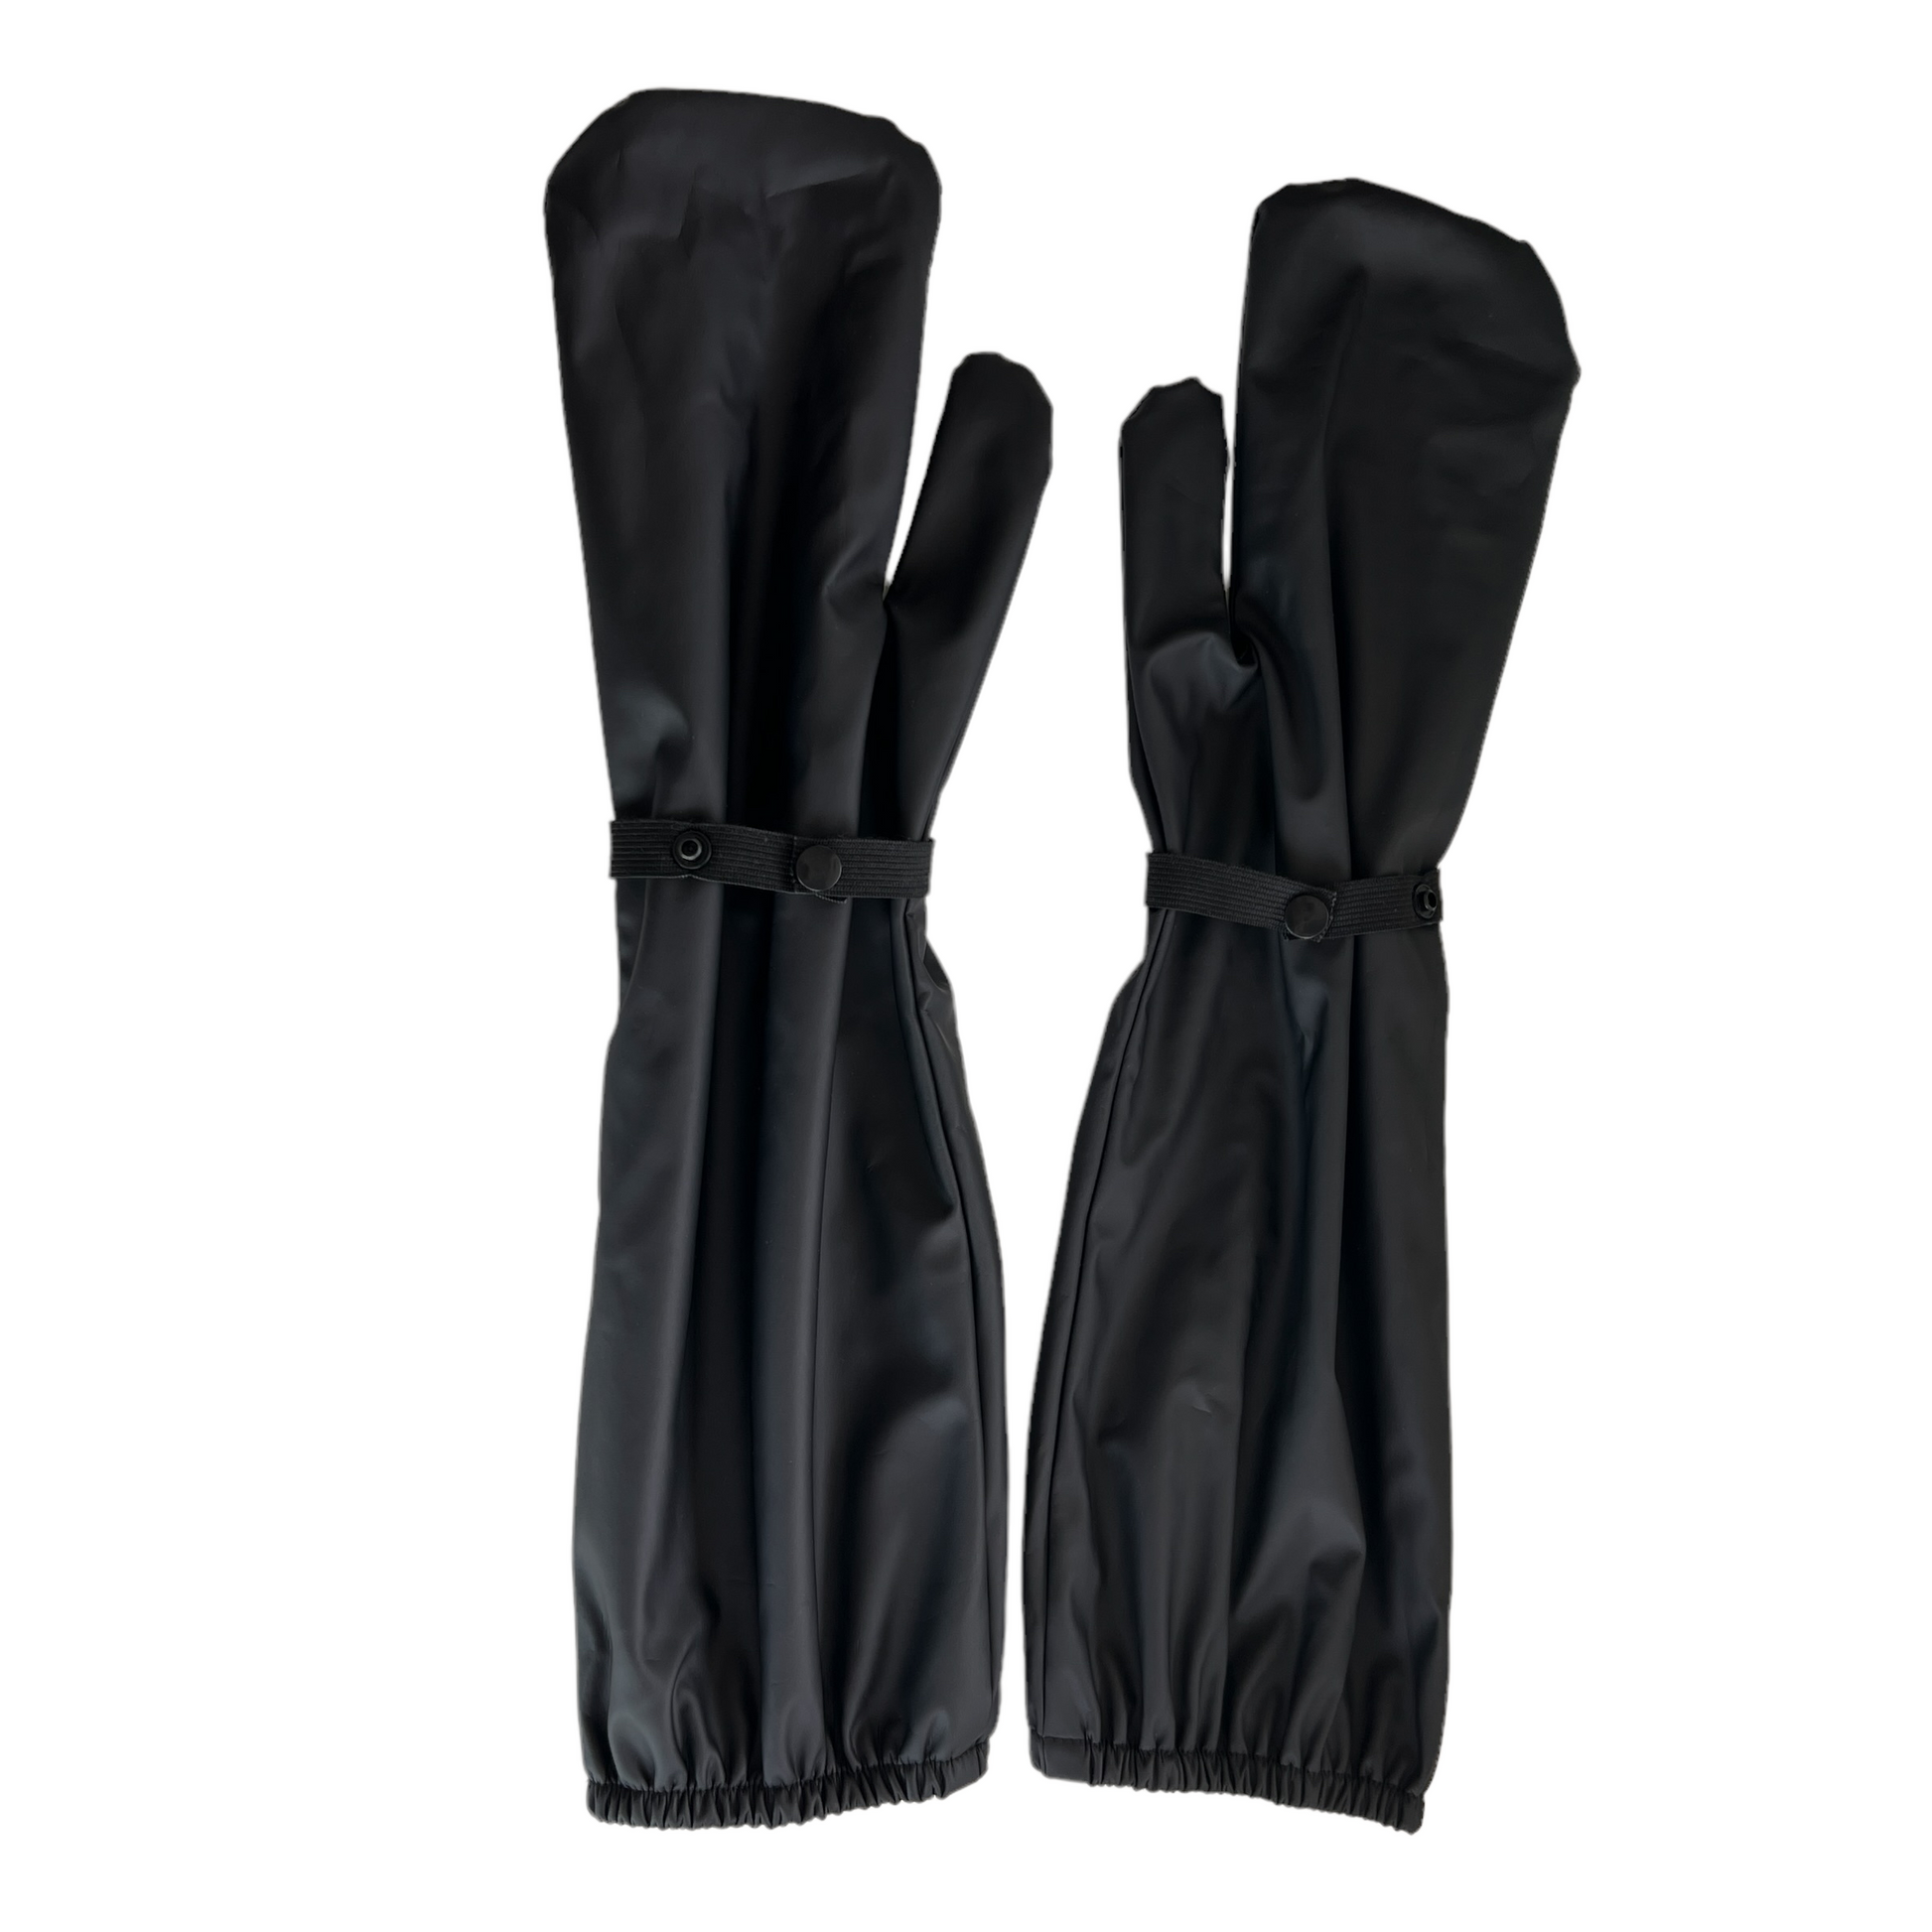 Waterproof Gloves  SPIRIT SPARKPLUGS Black  